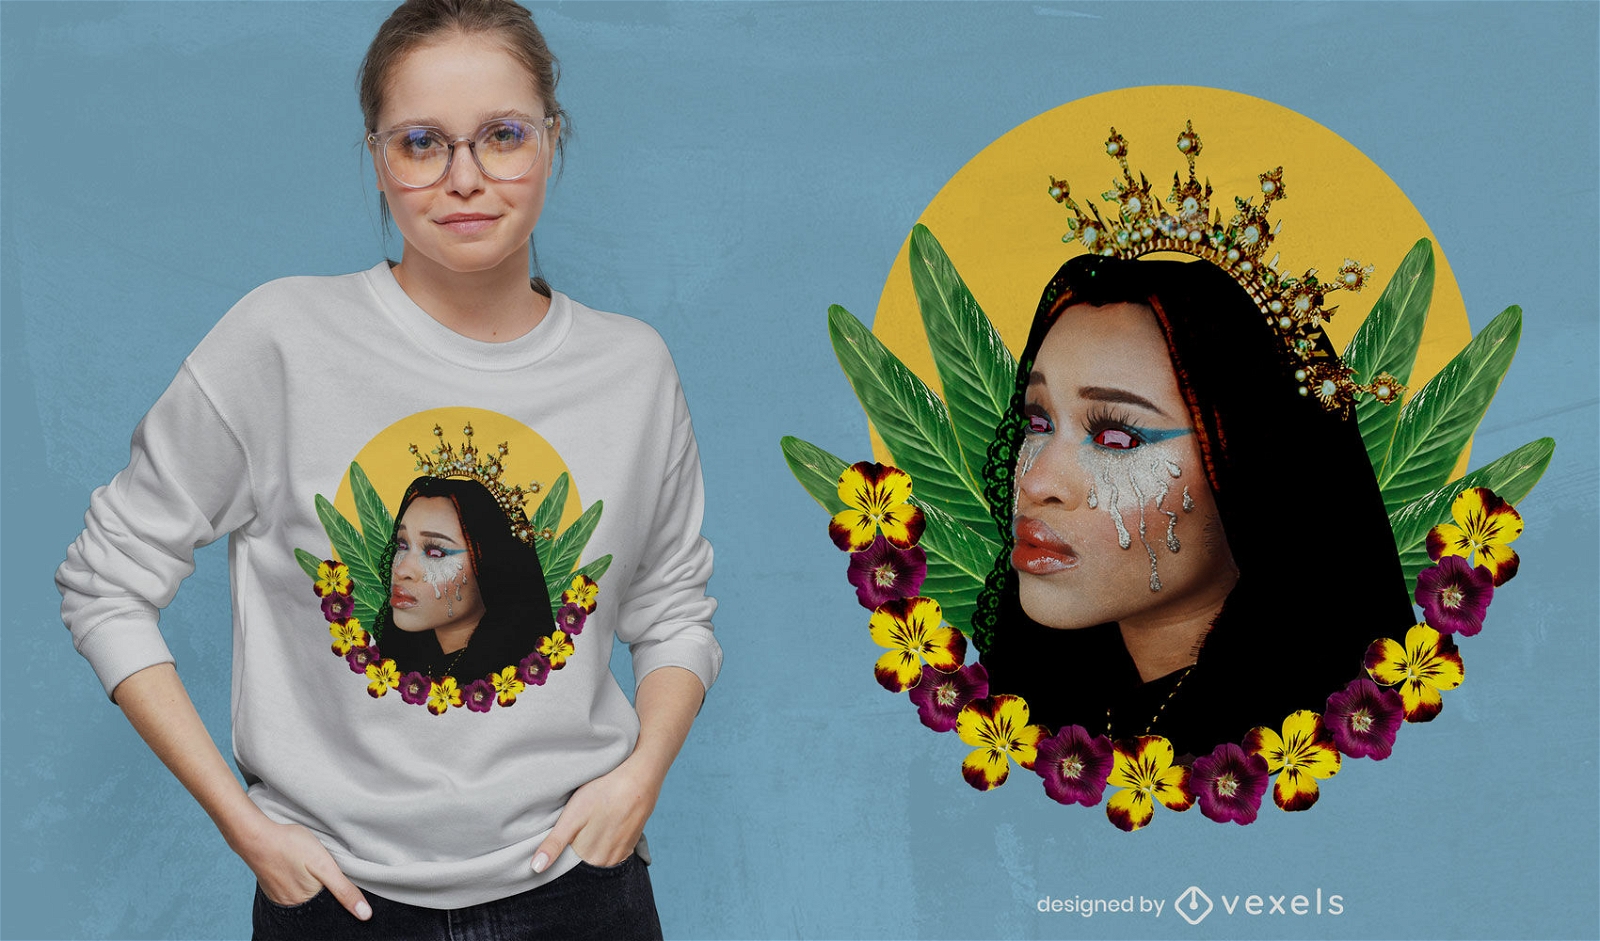 T-shirt da rainha com flores e folhas psd